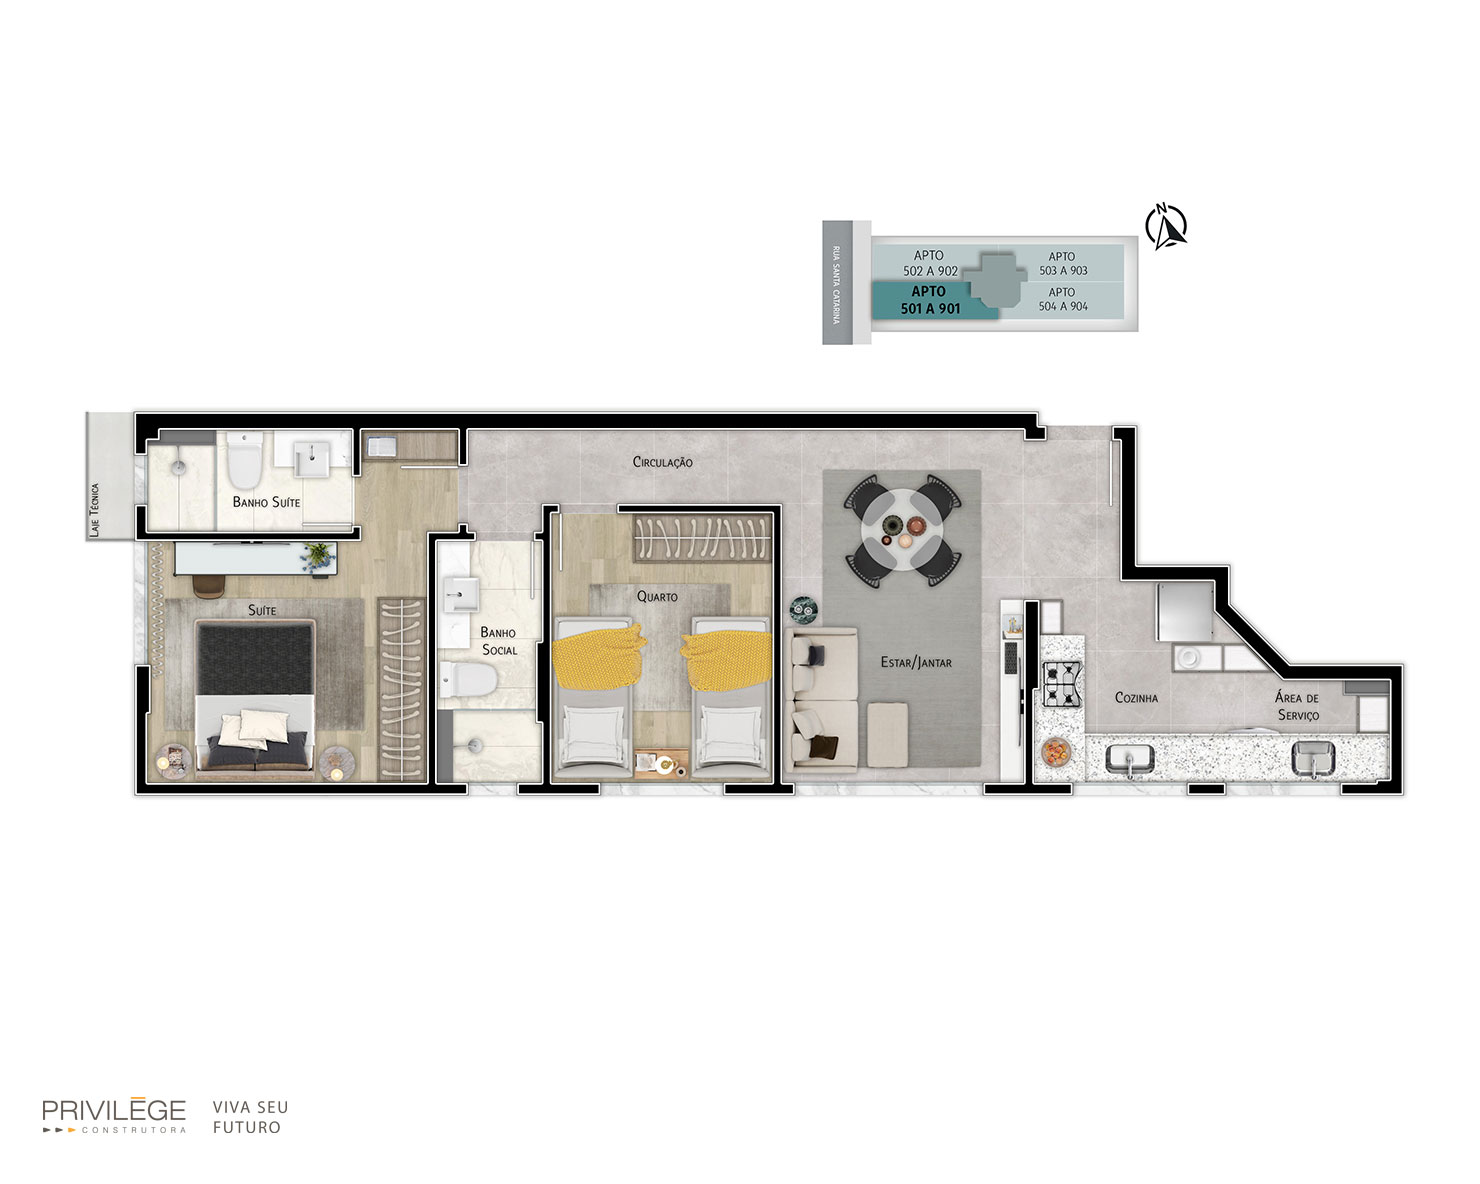 Apartamento 2 quartos – 501 a 901